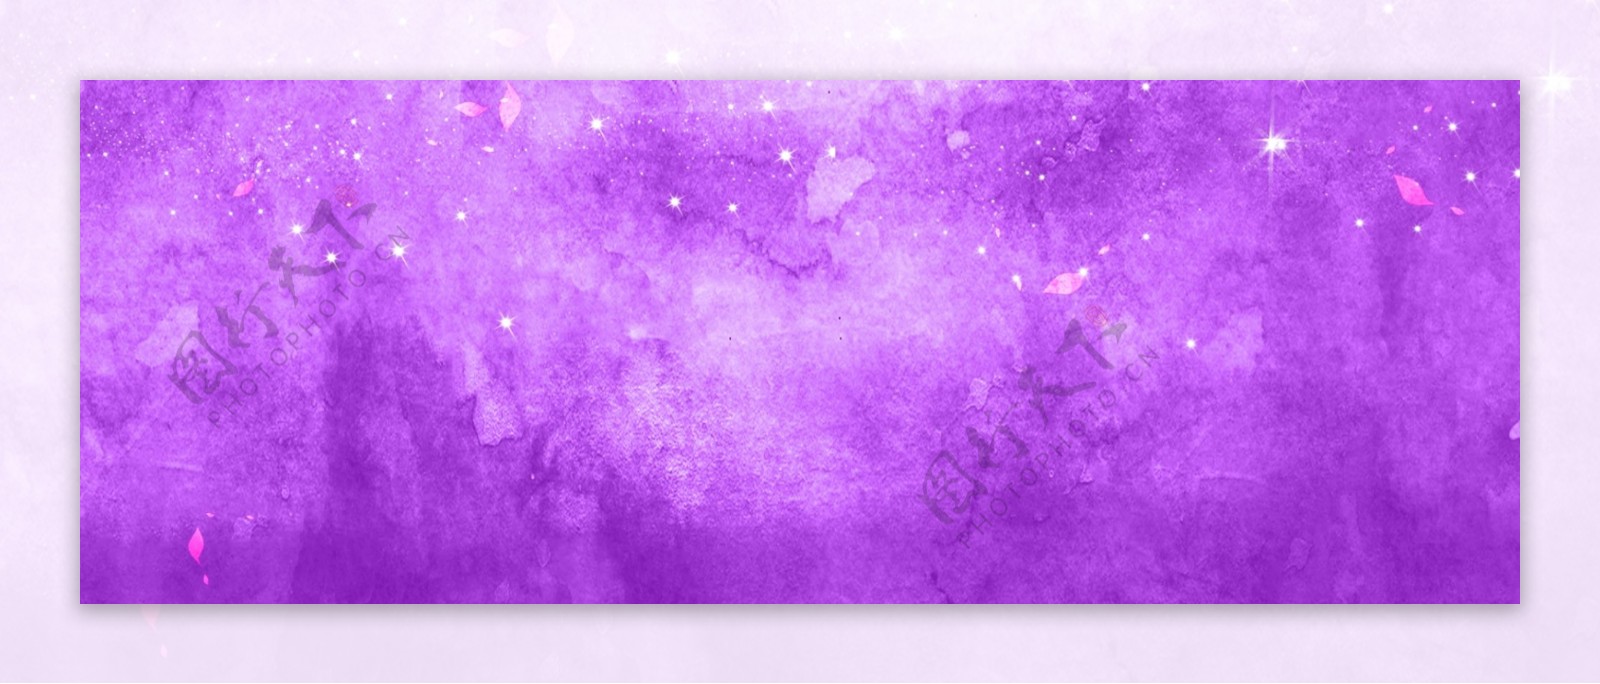 唯美纯色淡雅紫色小清新水墨水彩原创背景